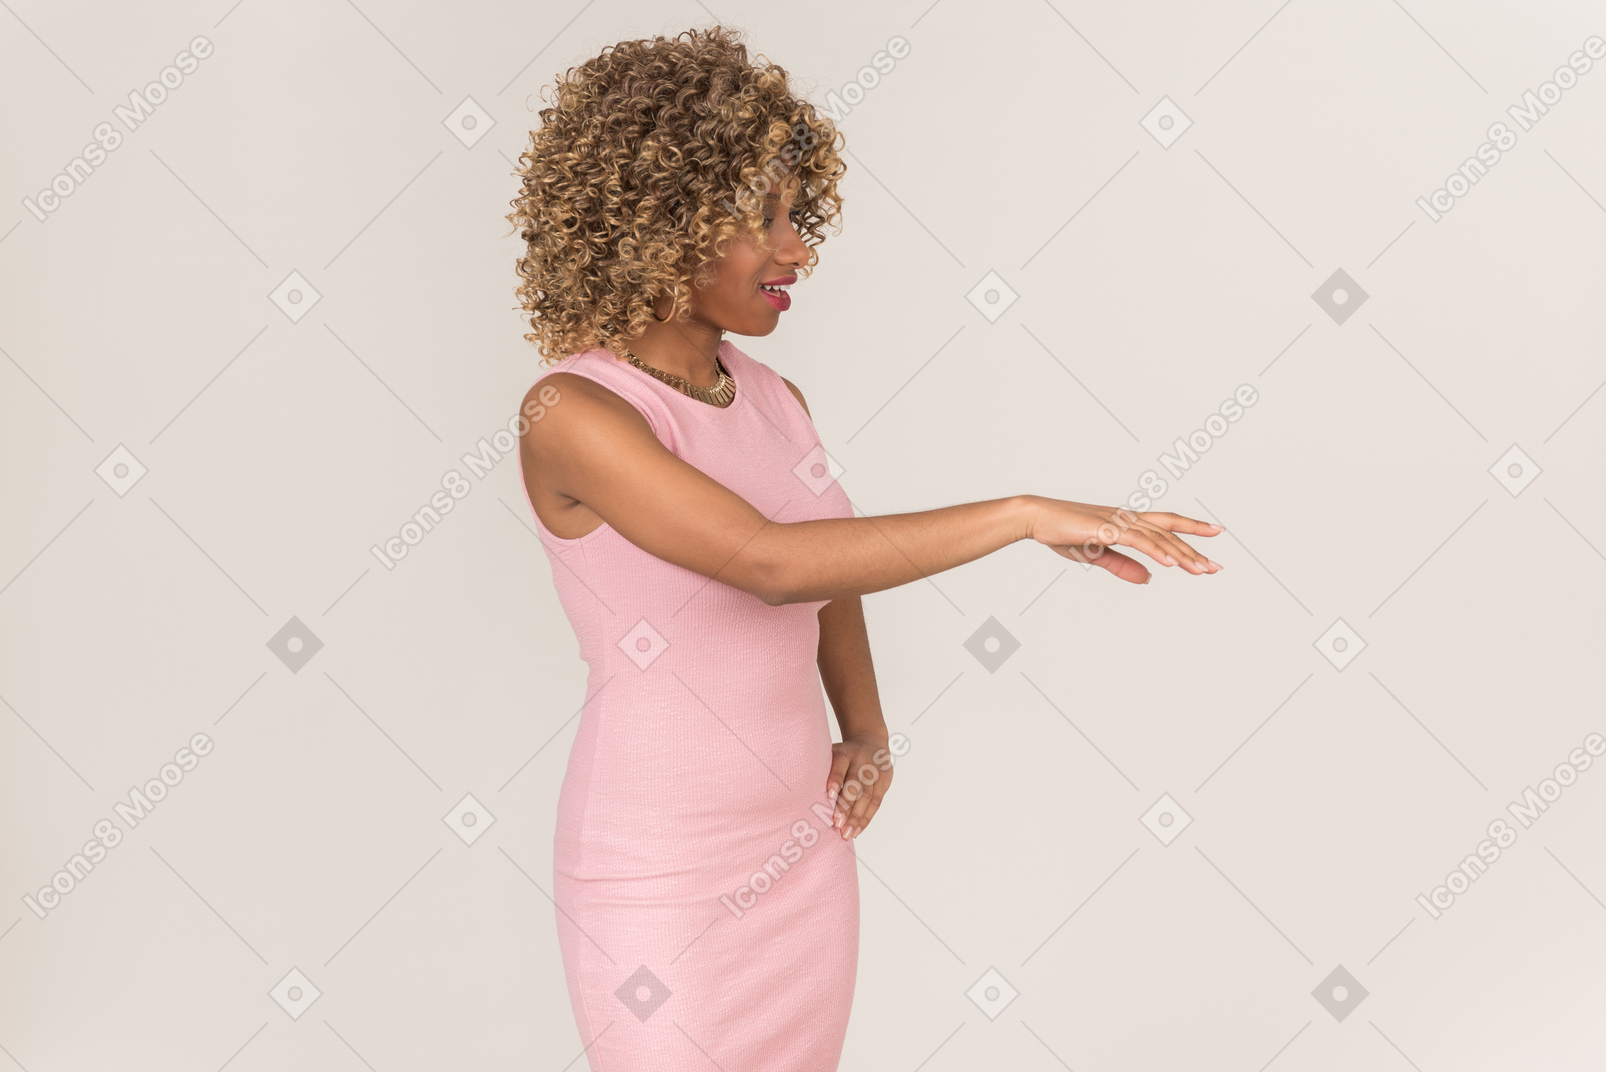 Uma mulher de vestido rosa levantando um braço